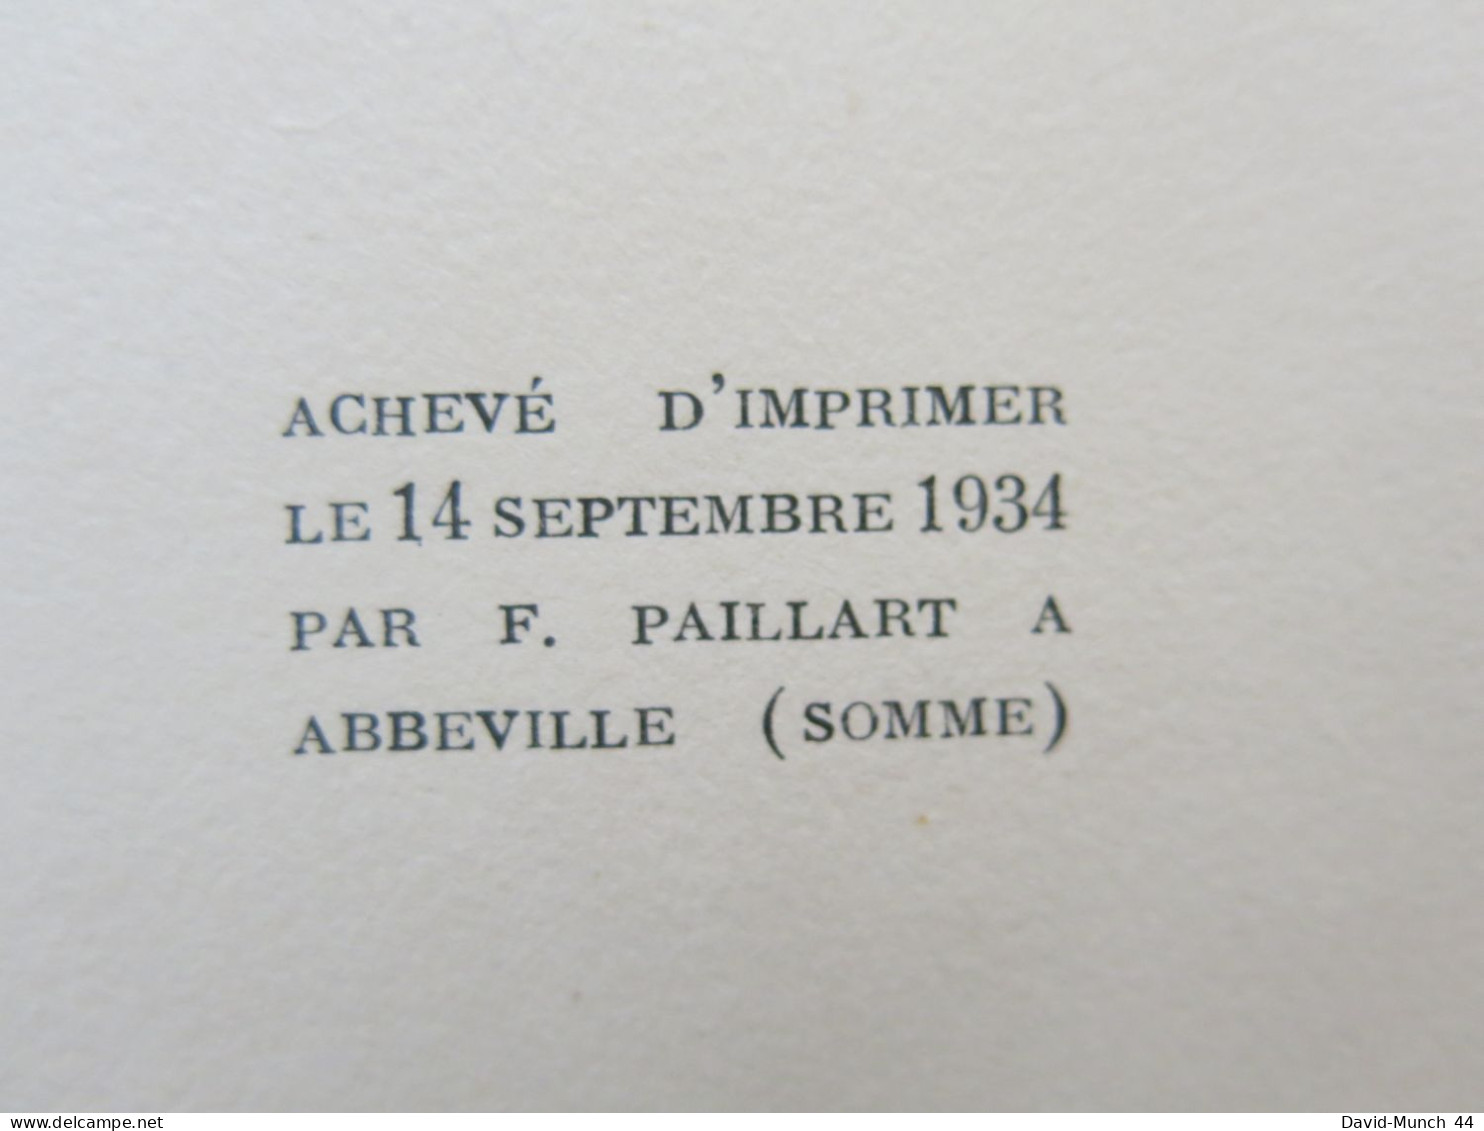 Les destinées sentimentales de Jacques Chardonne. Bernard Grasset, "Pour mon plaisir"-V. 1934. Exemplaire sur Arches